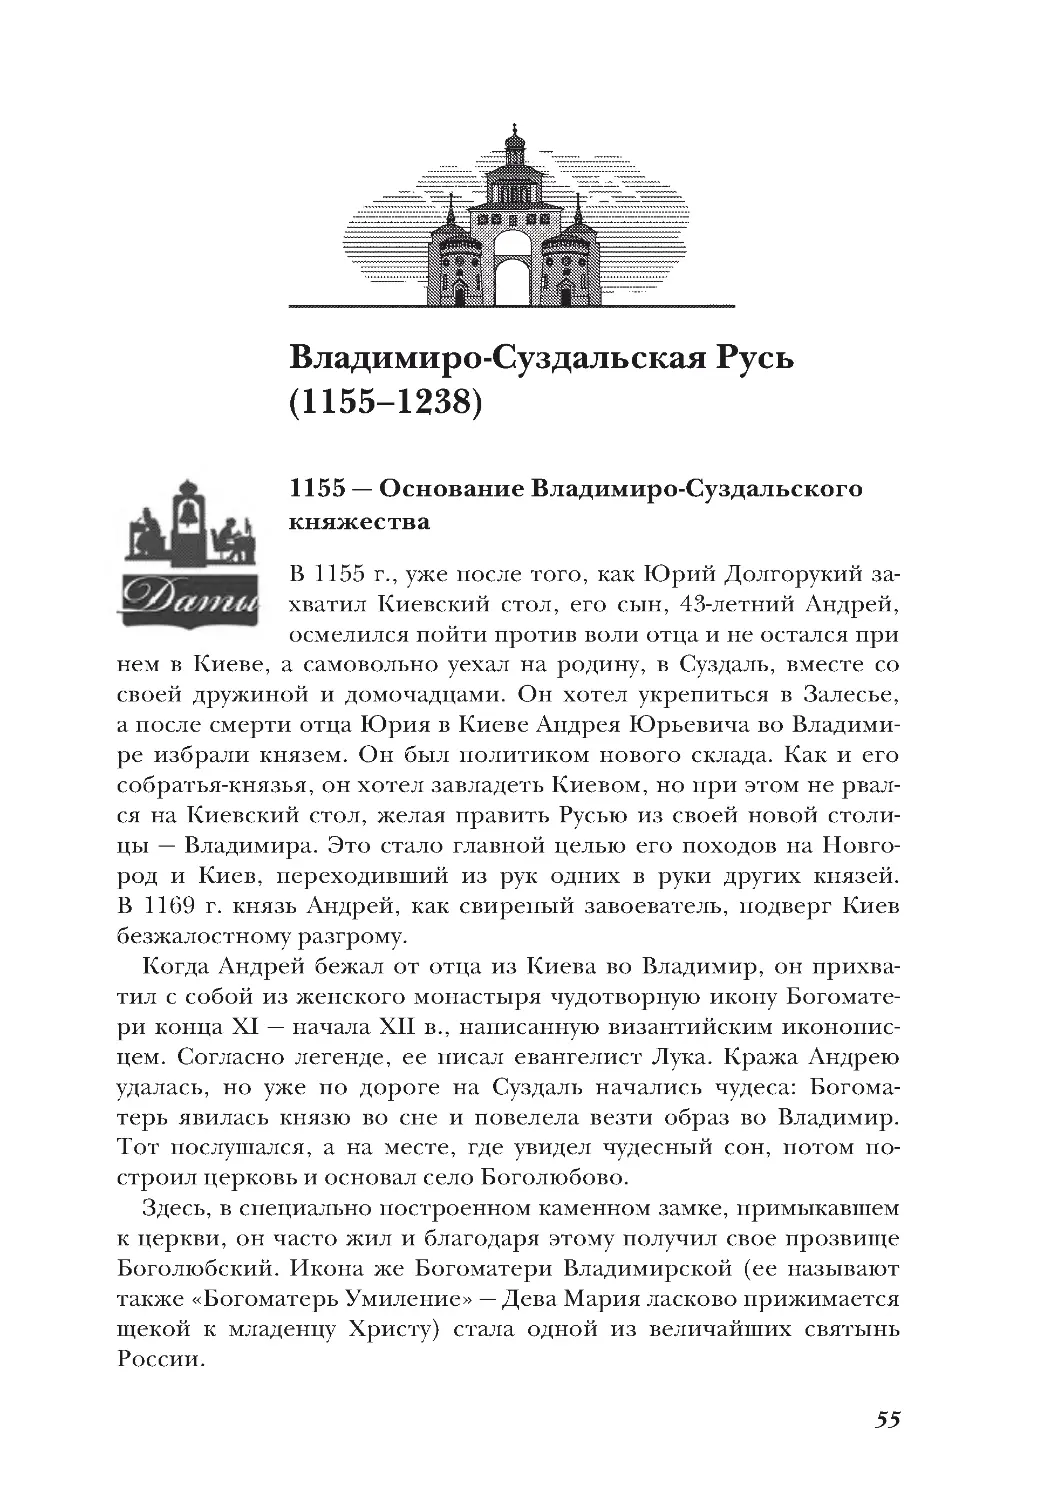 1155 — Основание Владимиро-Суздальского княжества